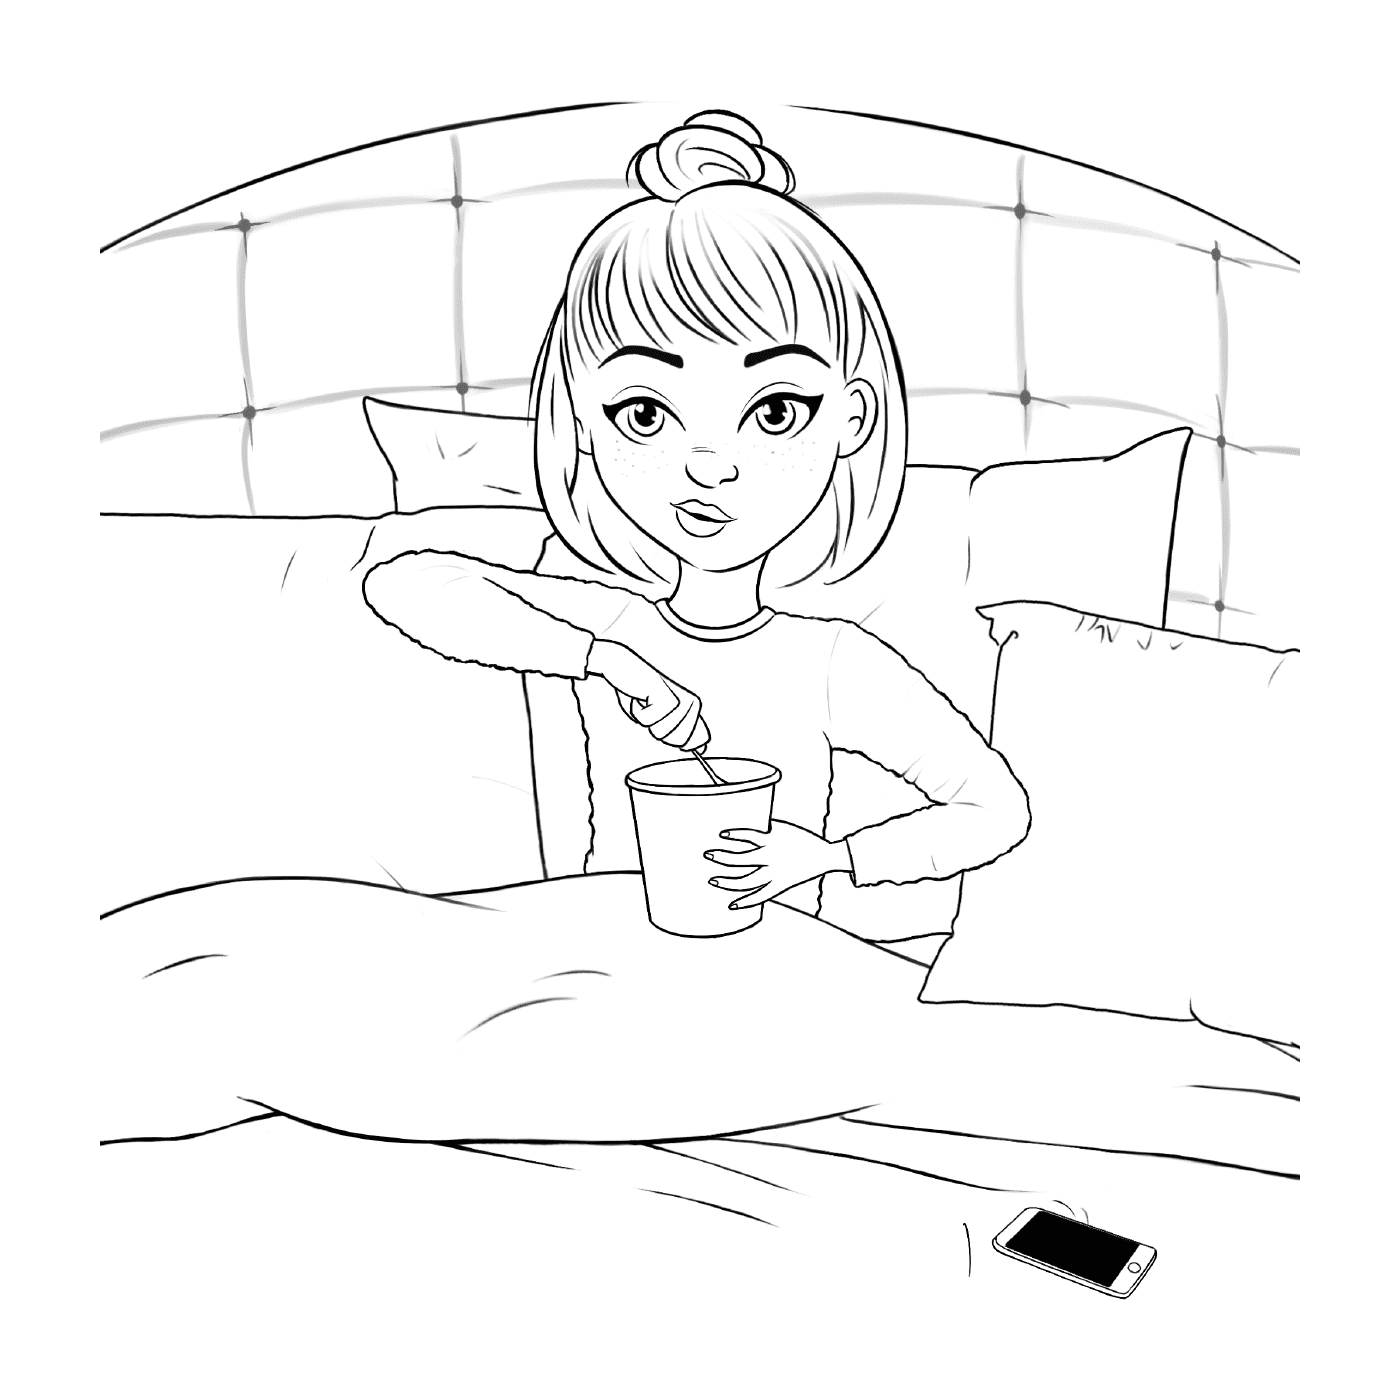  Ragazza adolescente a letto con gelato 